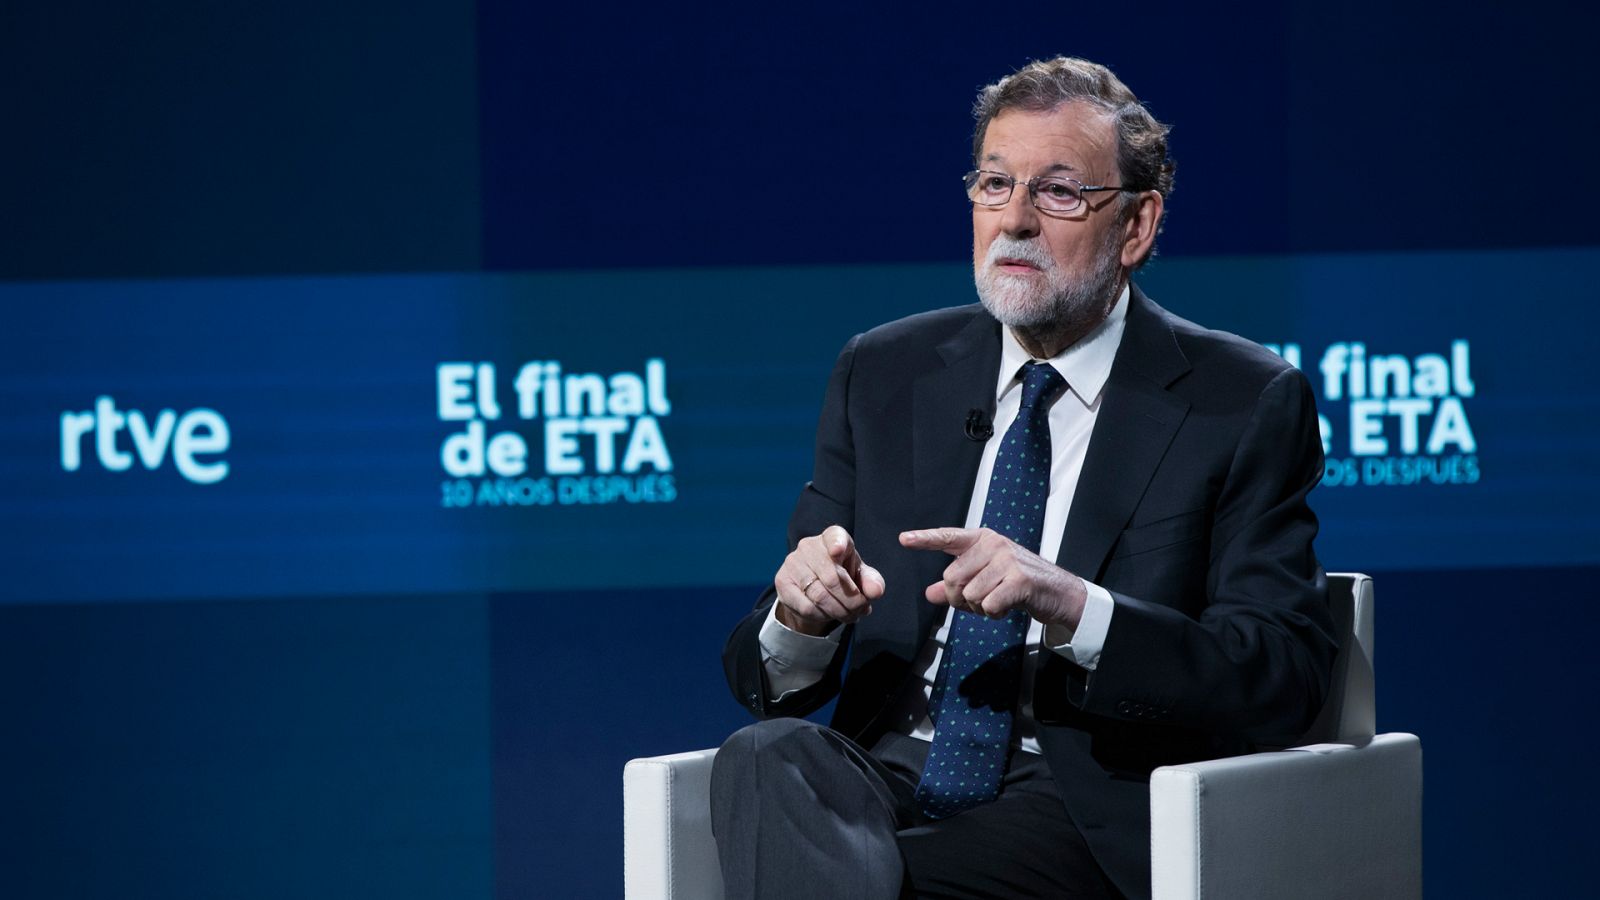 Especial informativo - El final de ETA. 10 años después. Entrevista a Mariano Rajoy - ver ahora